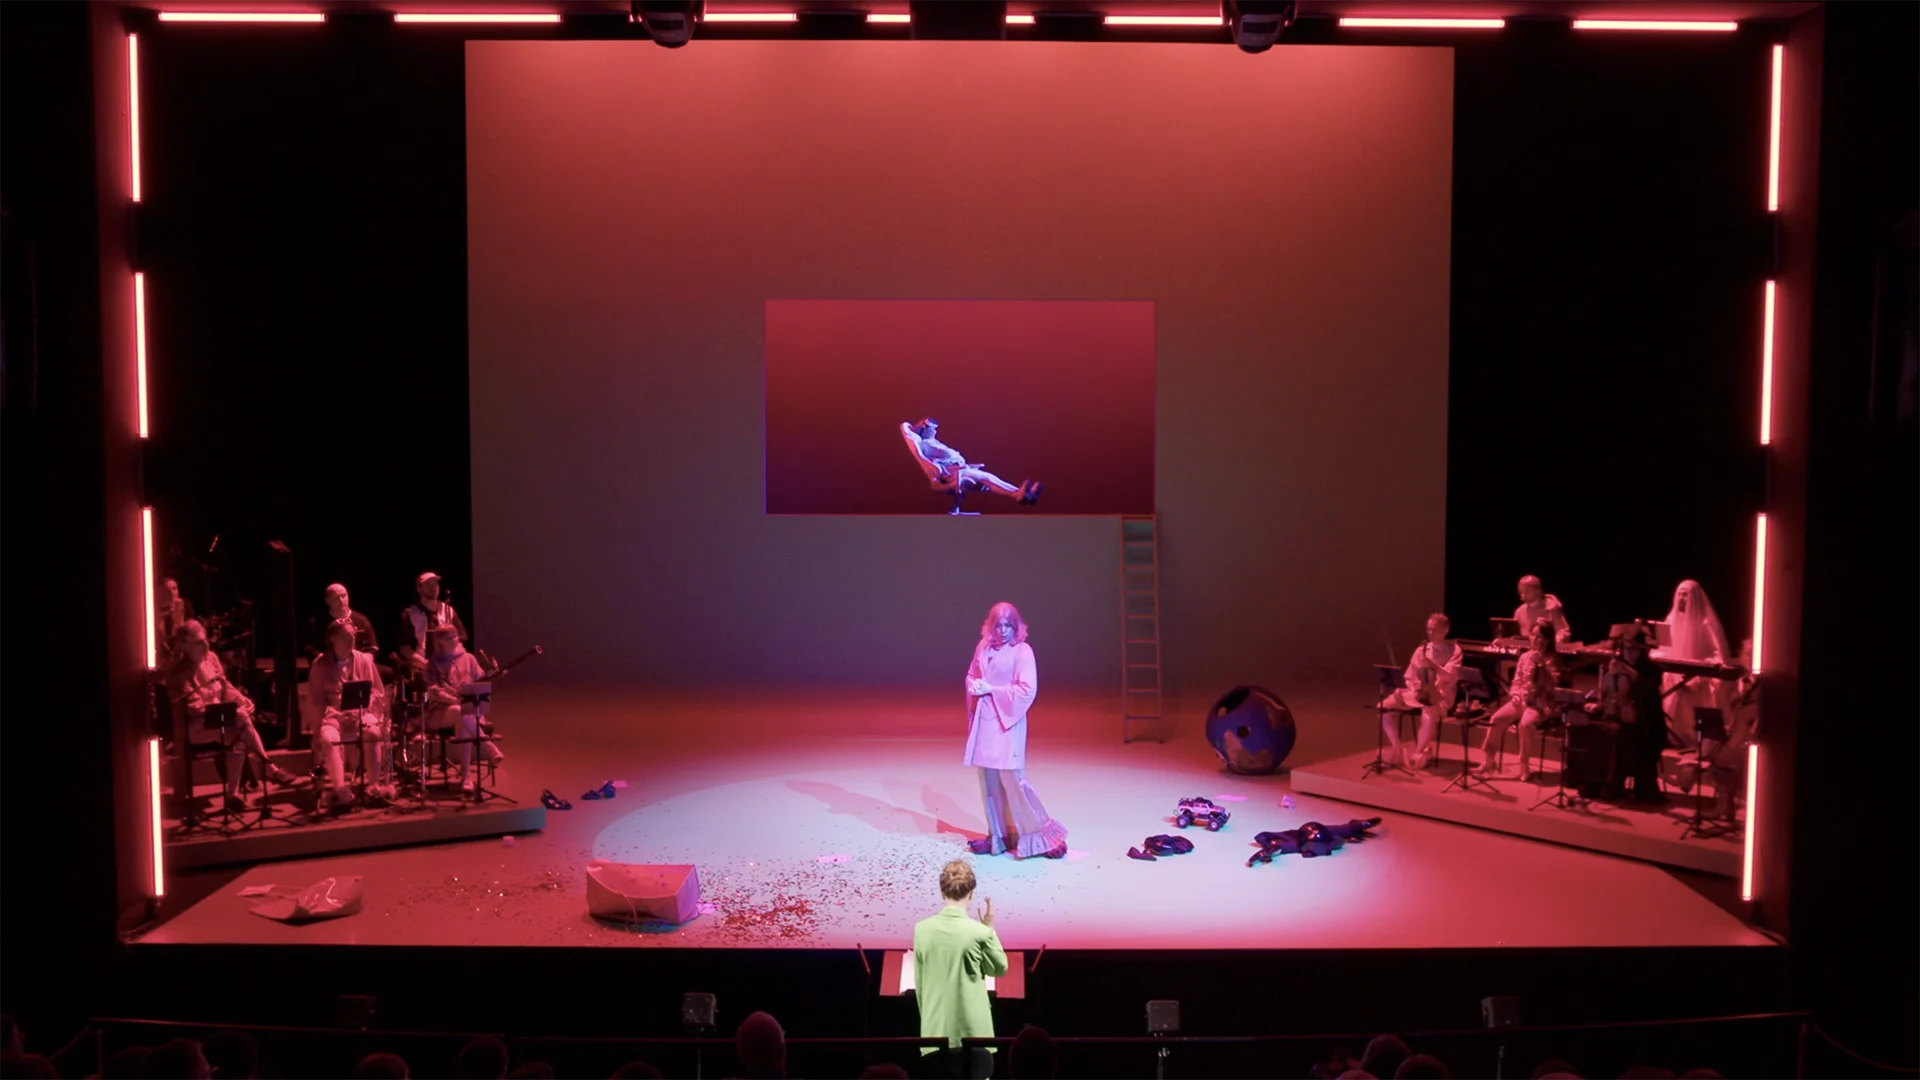 Cornland Studio - Vue d'ensemble d'une scène de théâtre éclairée par des lumières roses